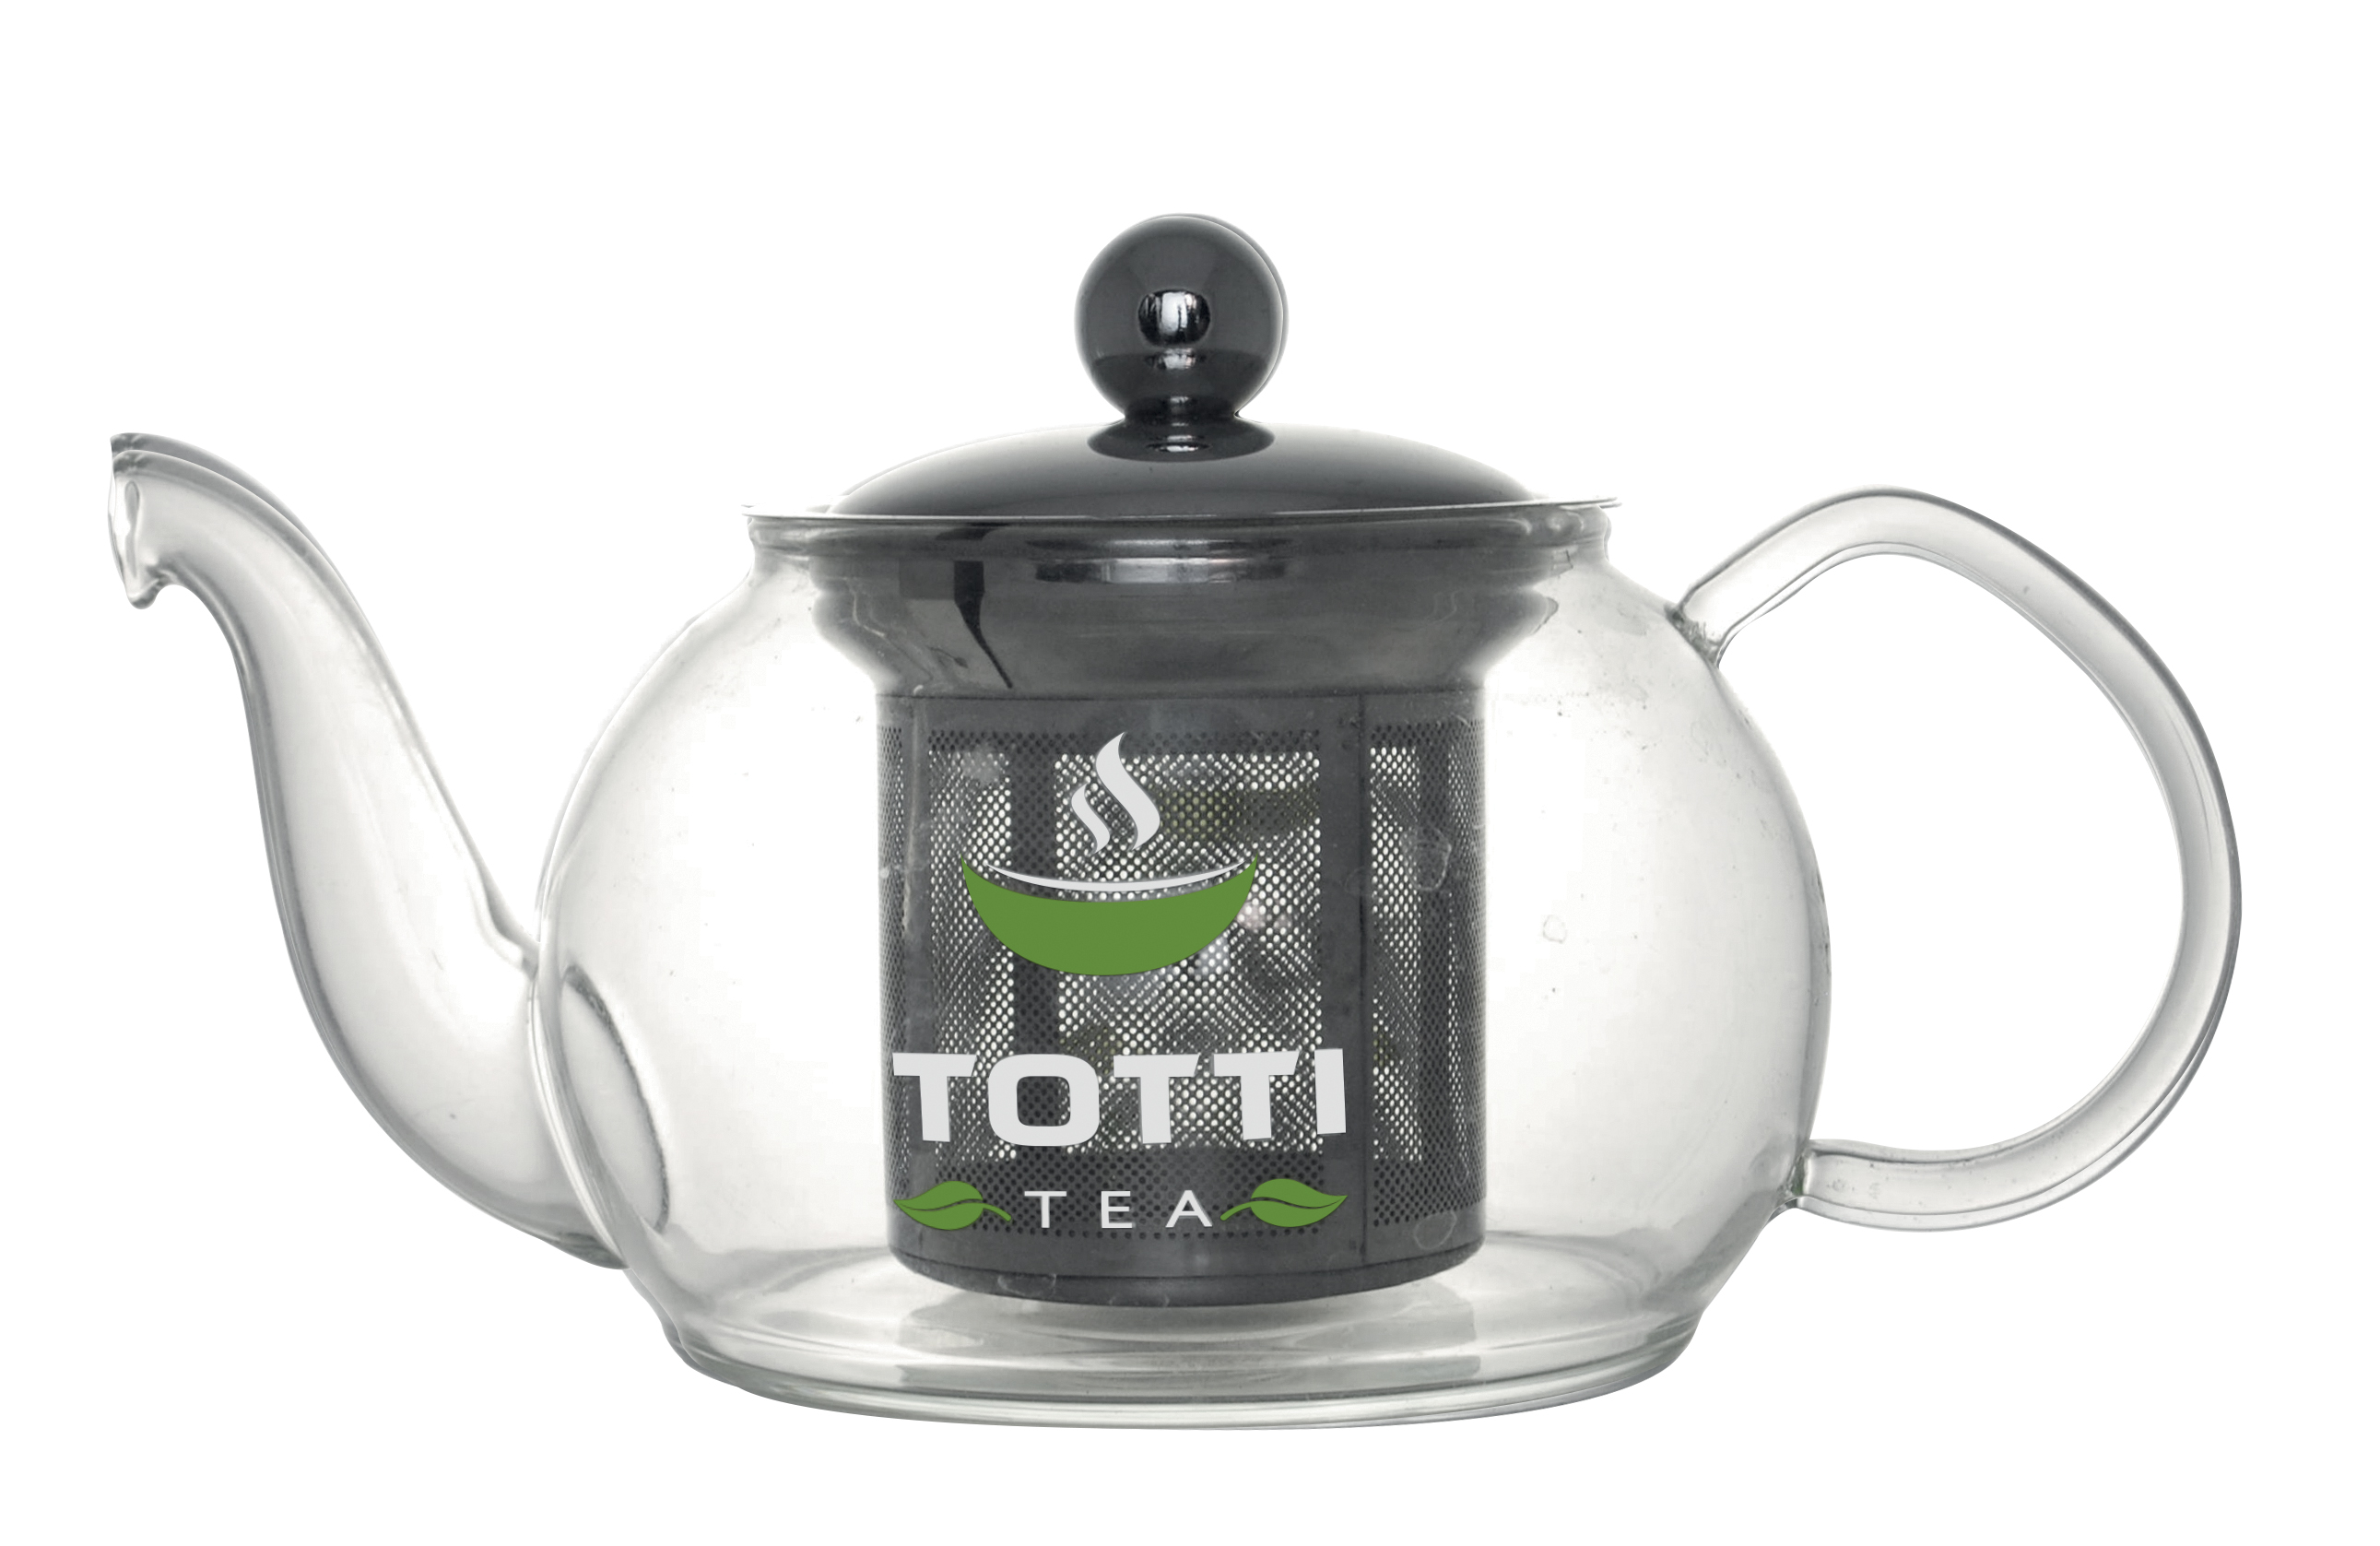 Glass teapot TOTTI Tea